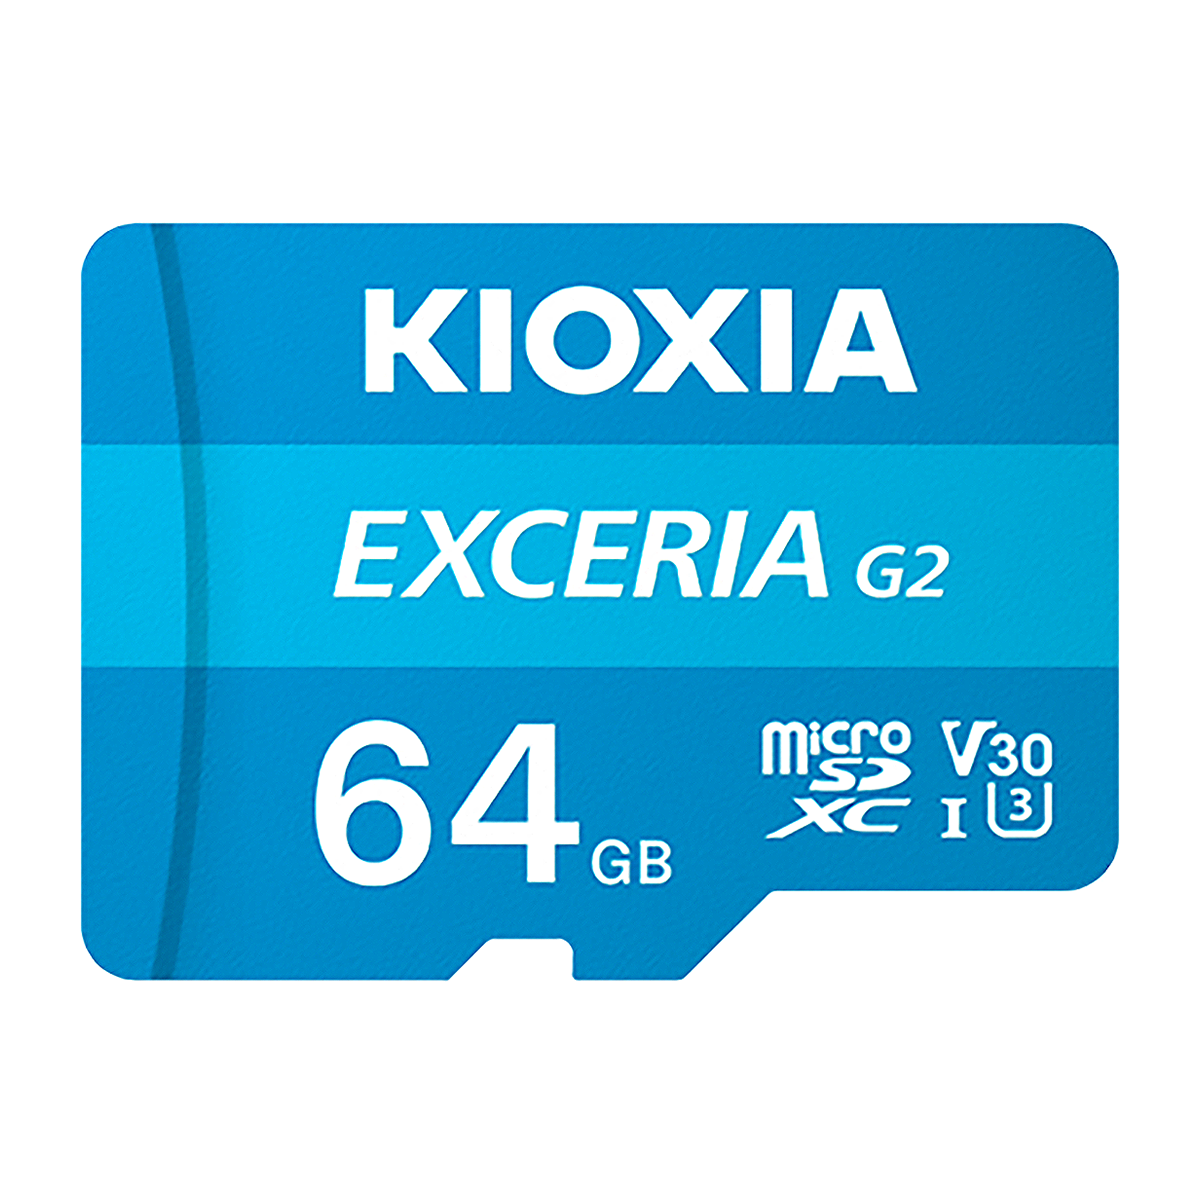 کارت حافظه microSDXC کیوکسیا مدل EXCERIA G2 کلاس 10 استاندارد UHS-I سرعت 100MBps ظرفیت 64 گیگابایت